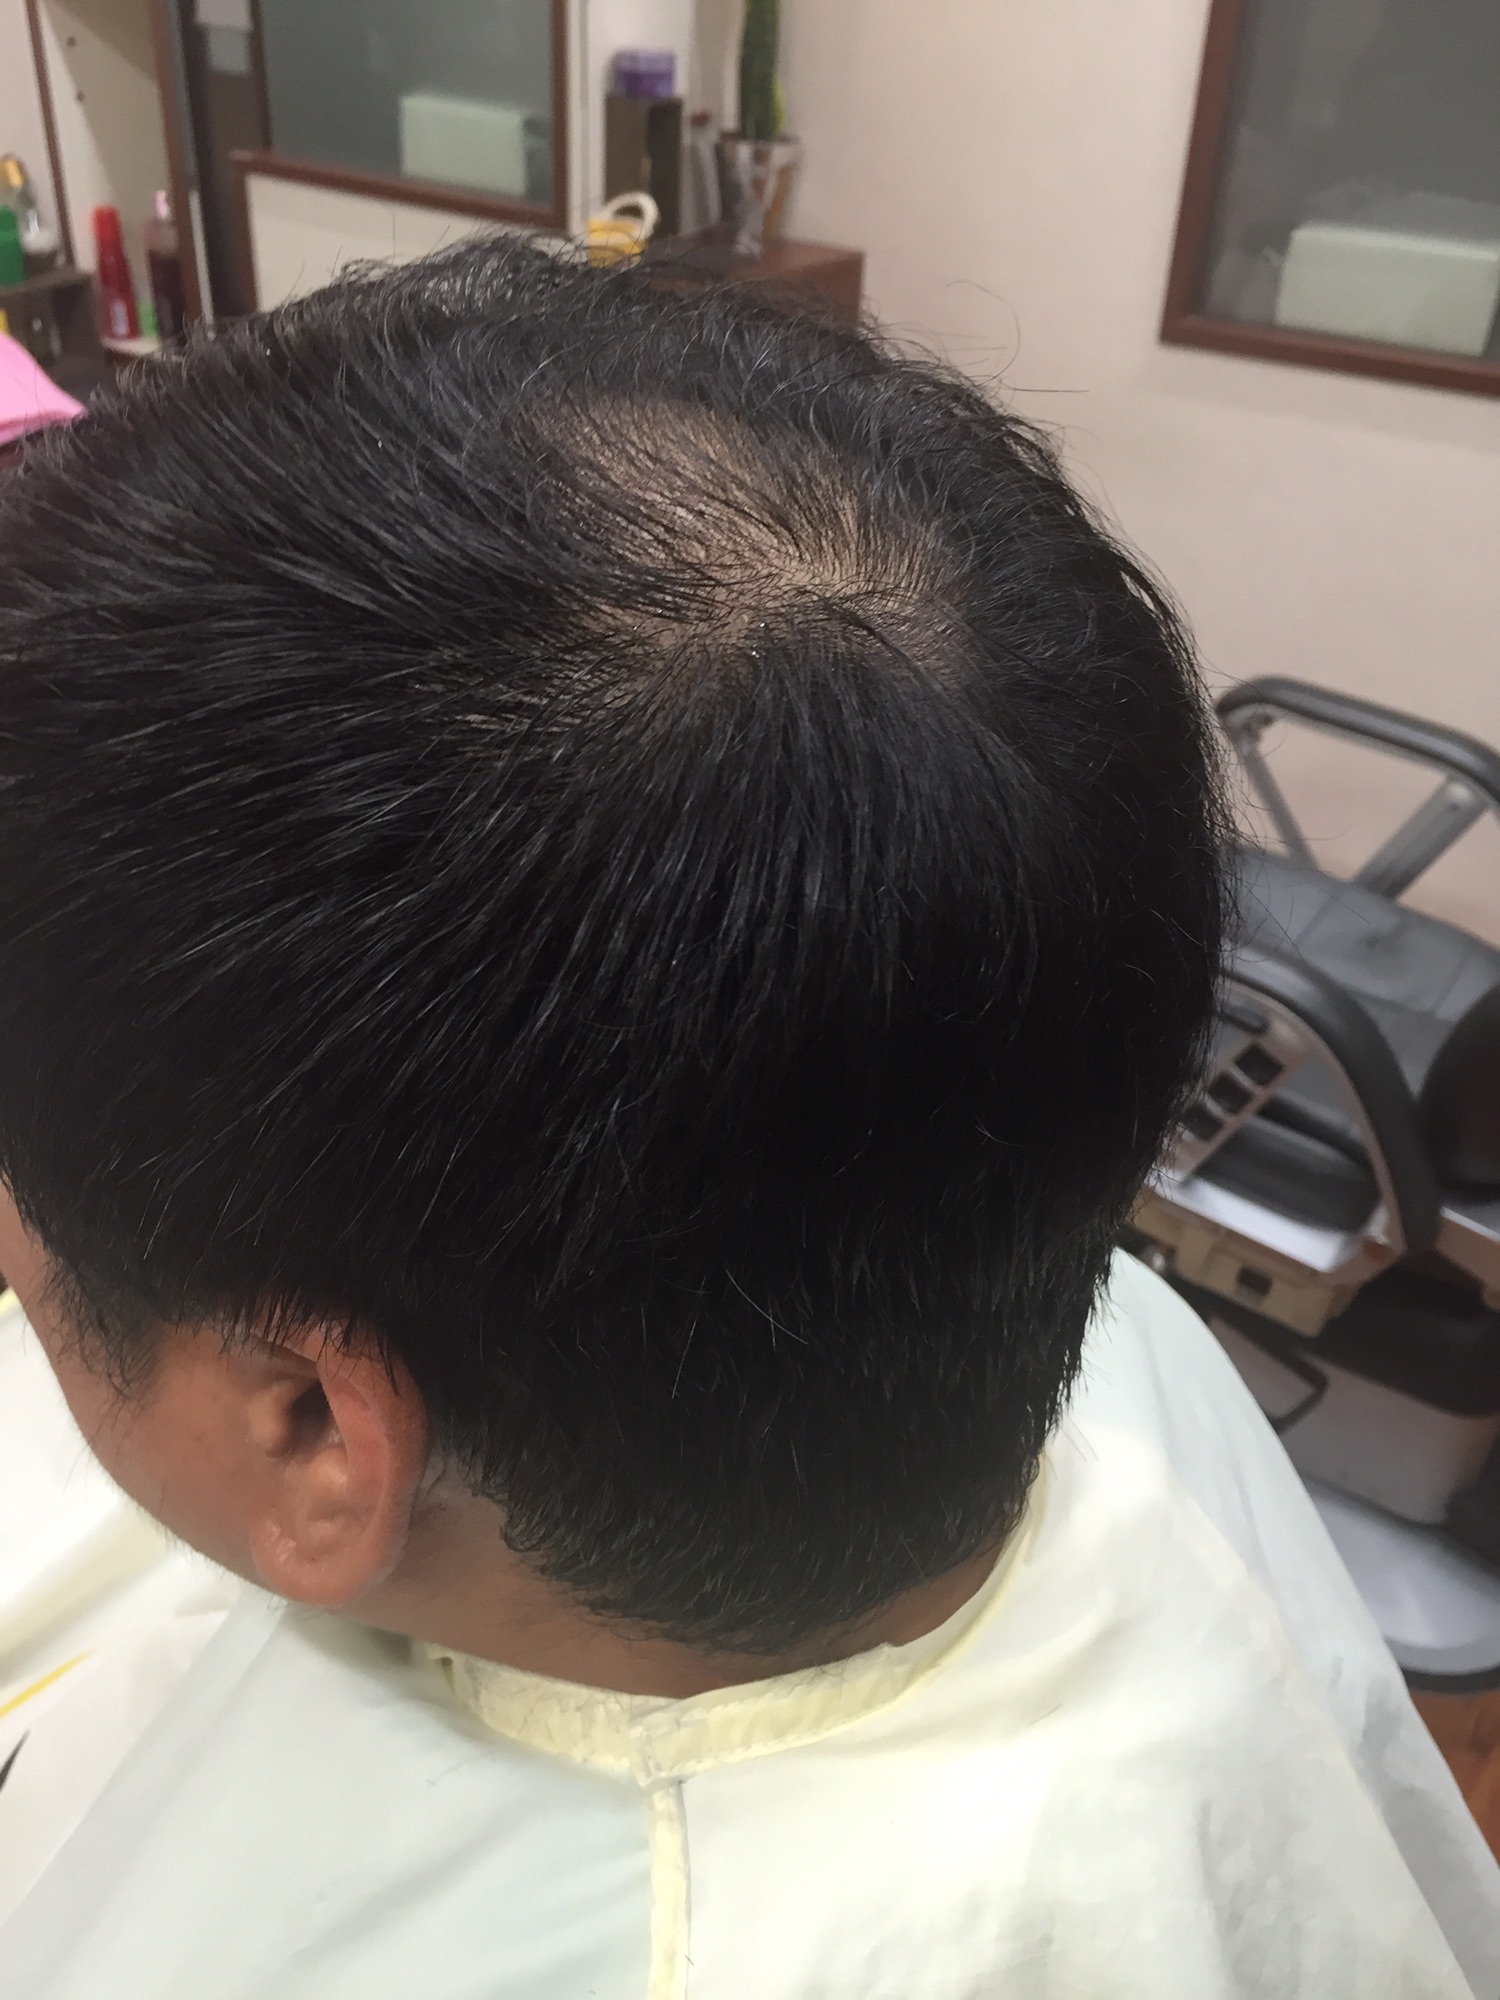 男性の薄毛対策のヘアスタイル 大東市理容店 Hair Salon Kurisu 平日予約で19時3021時まで営業中